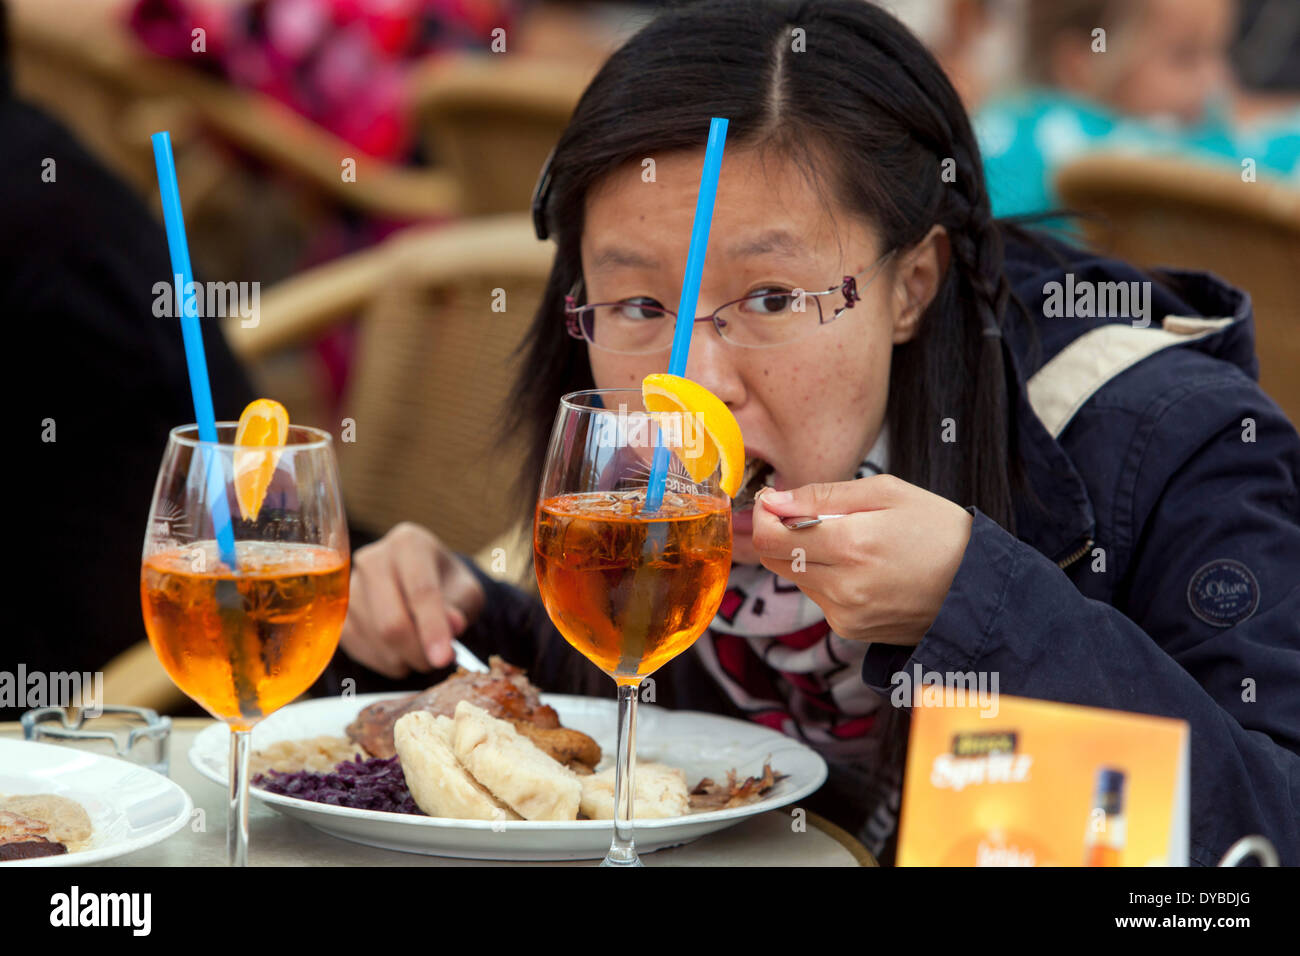 Asian tourist eating outdoors Czech traditional food Duck, cabbage, and dumplings Prague Czech Republic Stock Photo